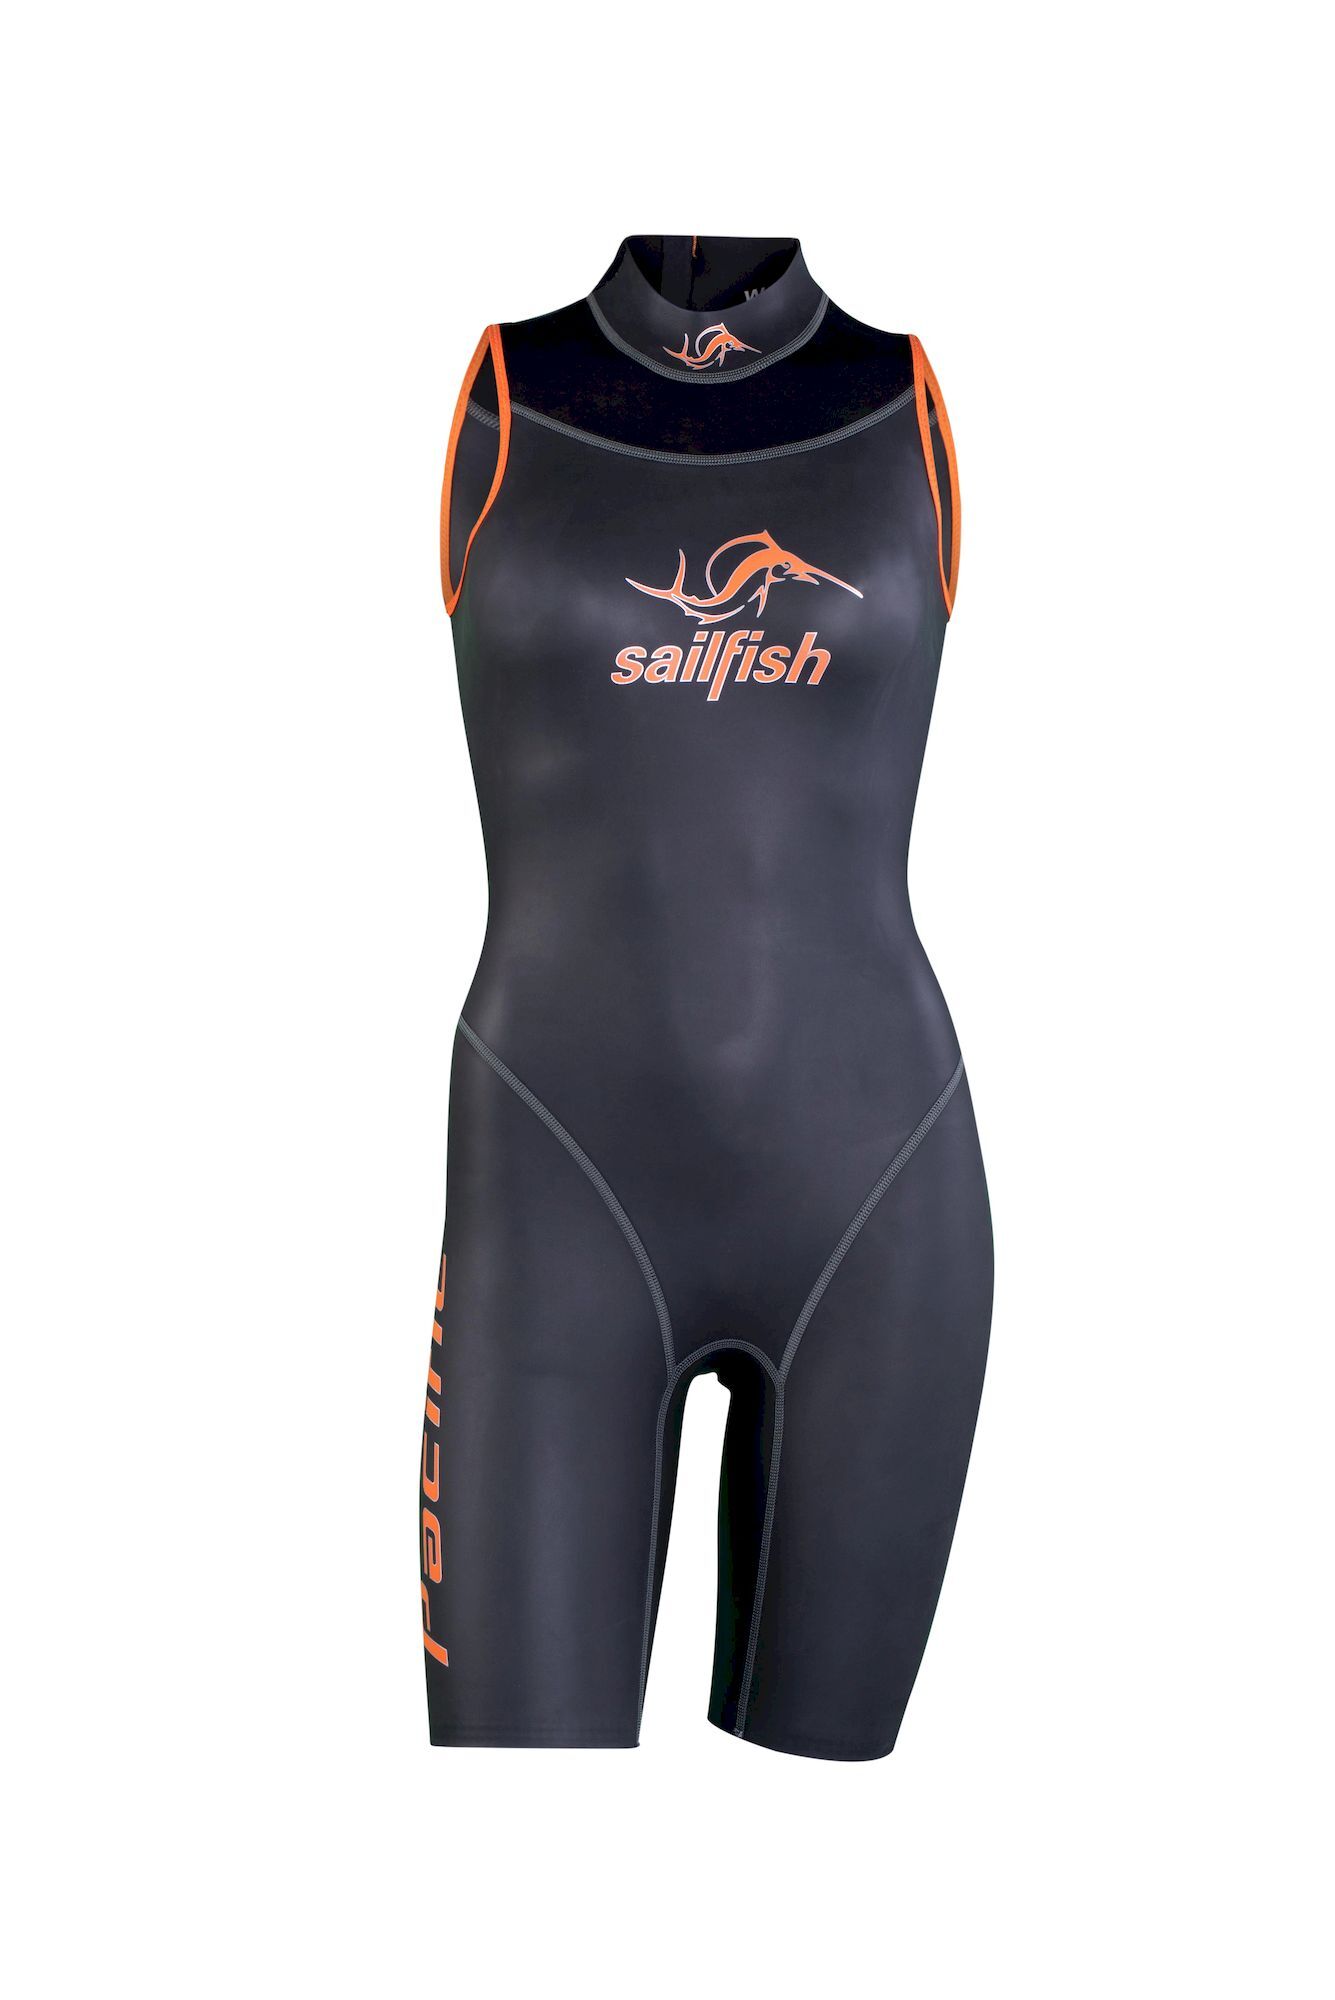 Sailfish Womens Pacific 2 - Neoprene wetsuit - Women's